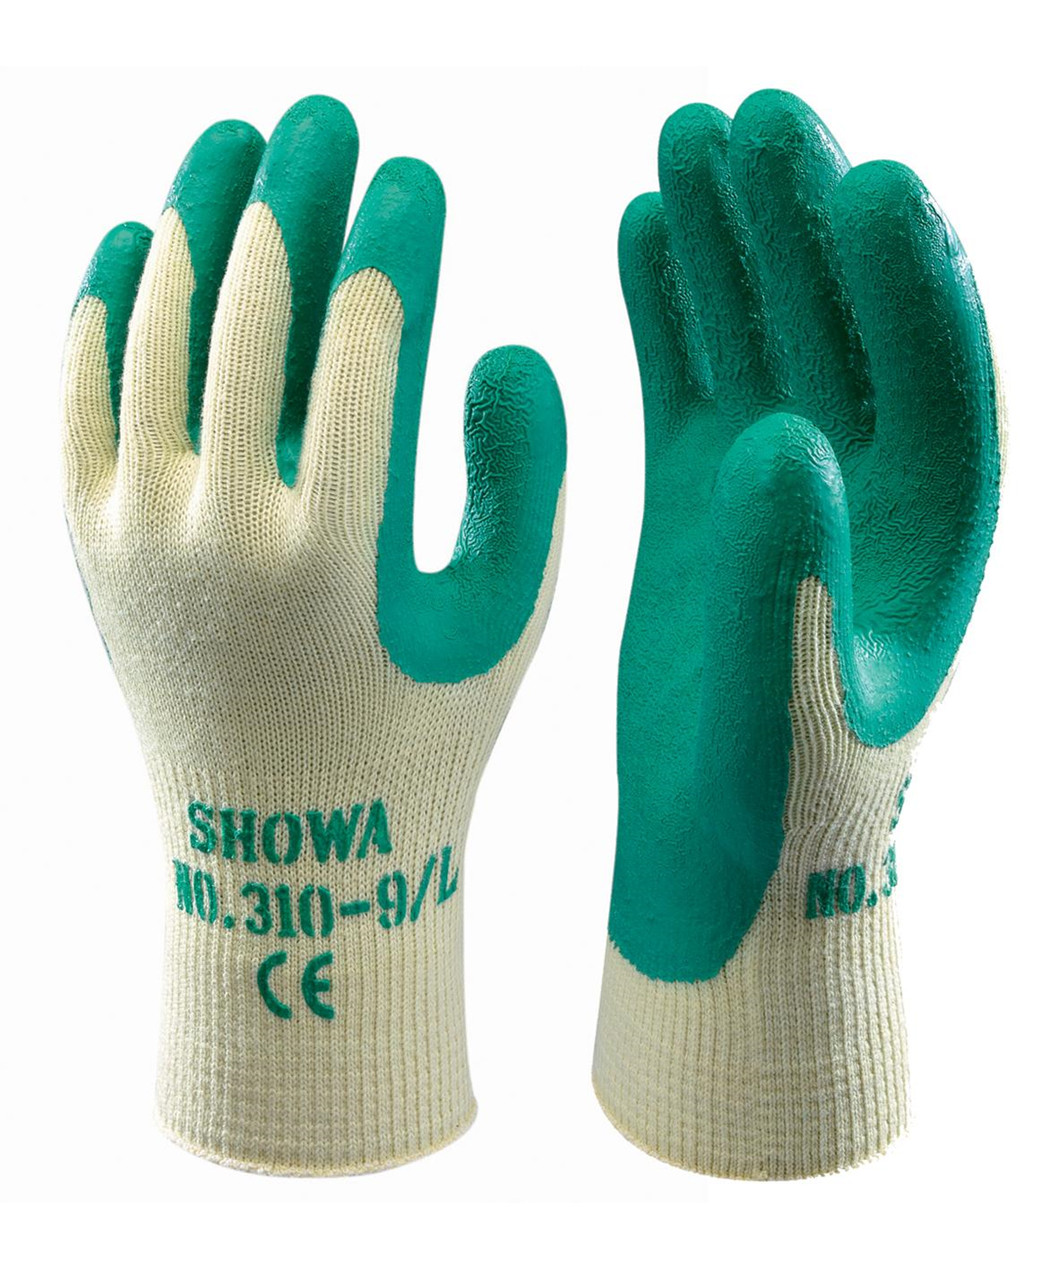 Se Showa 310 Grip handske (8) hos Specialbutikken